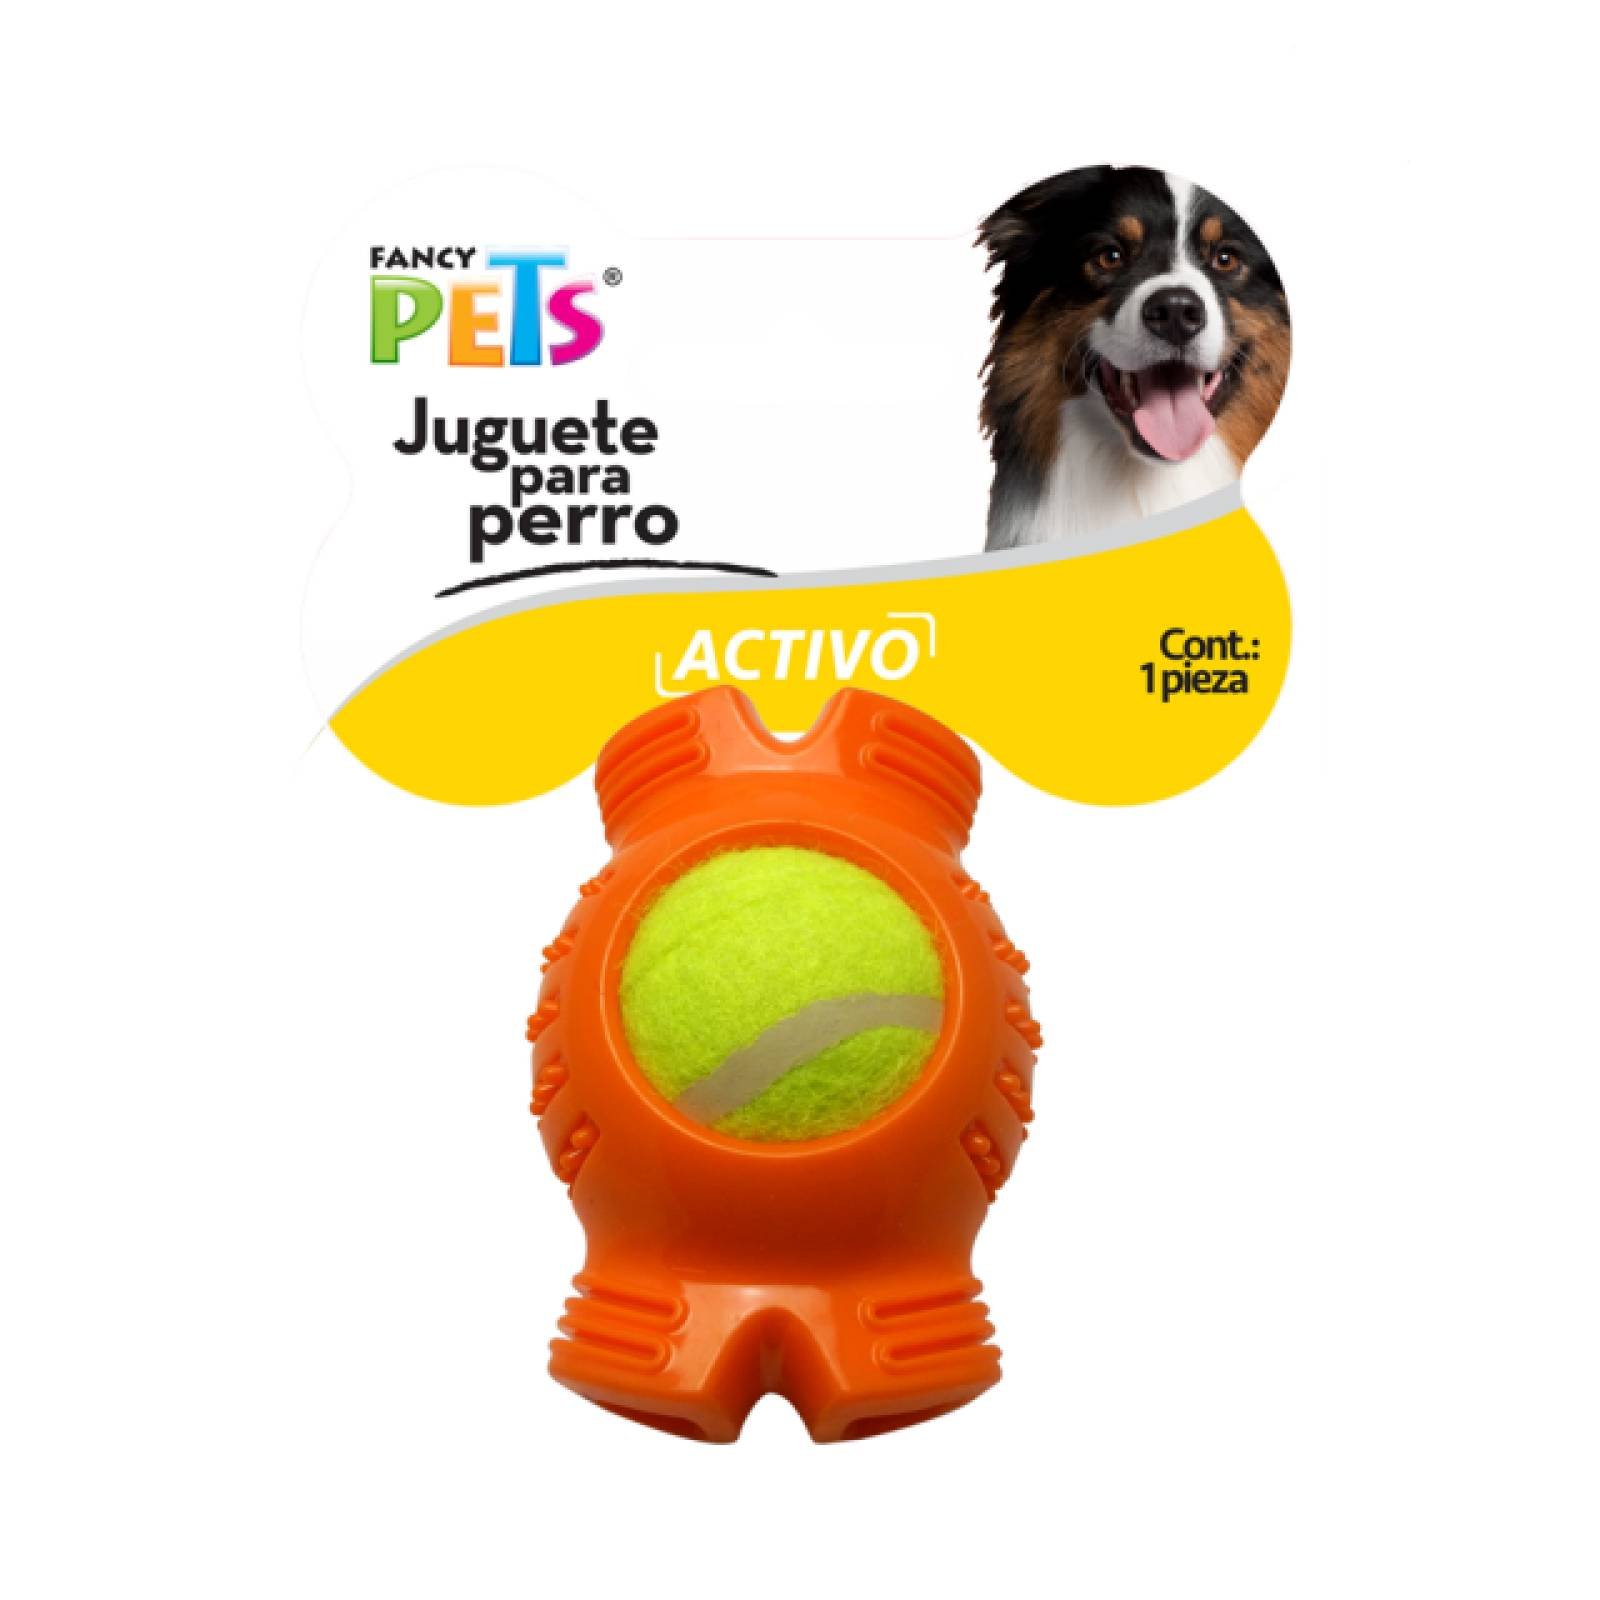 Fancy Pets Juguete para Perro Hueso con Pelota de Tenis